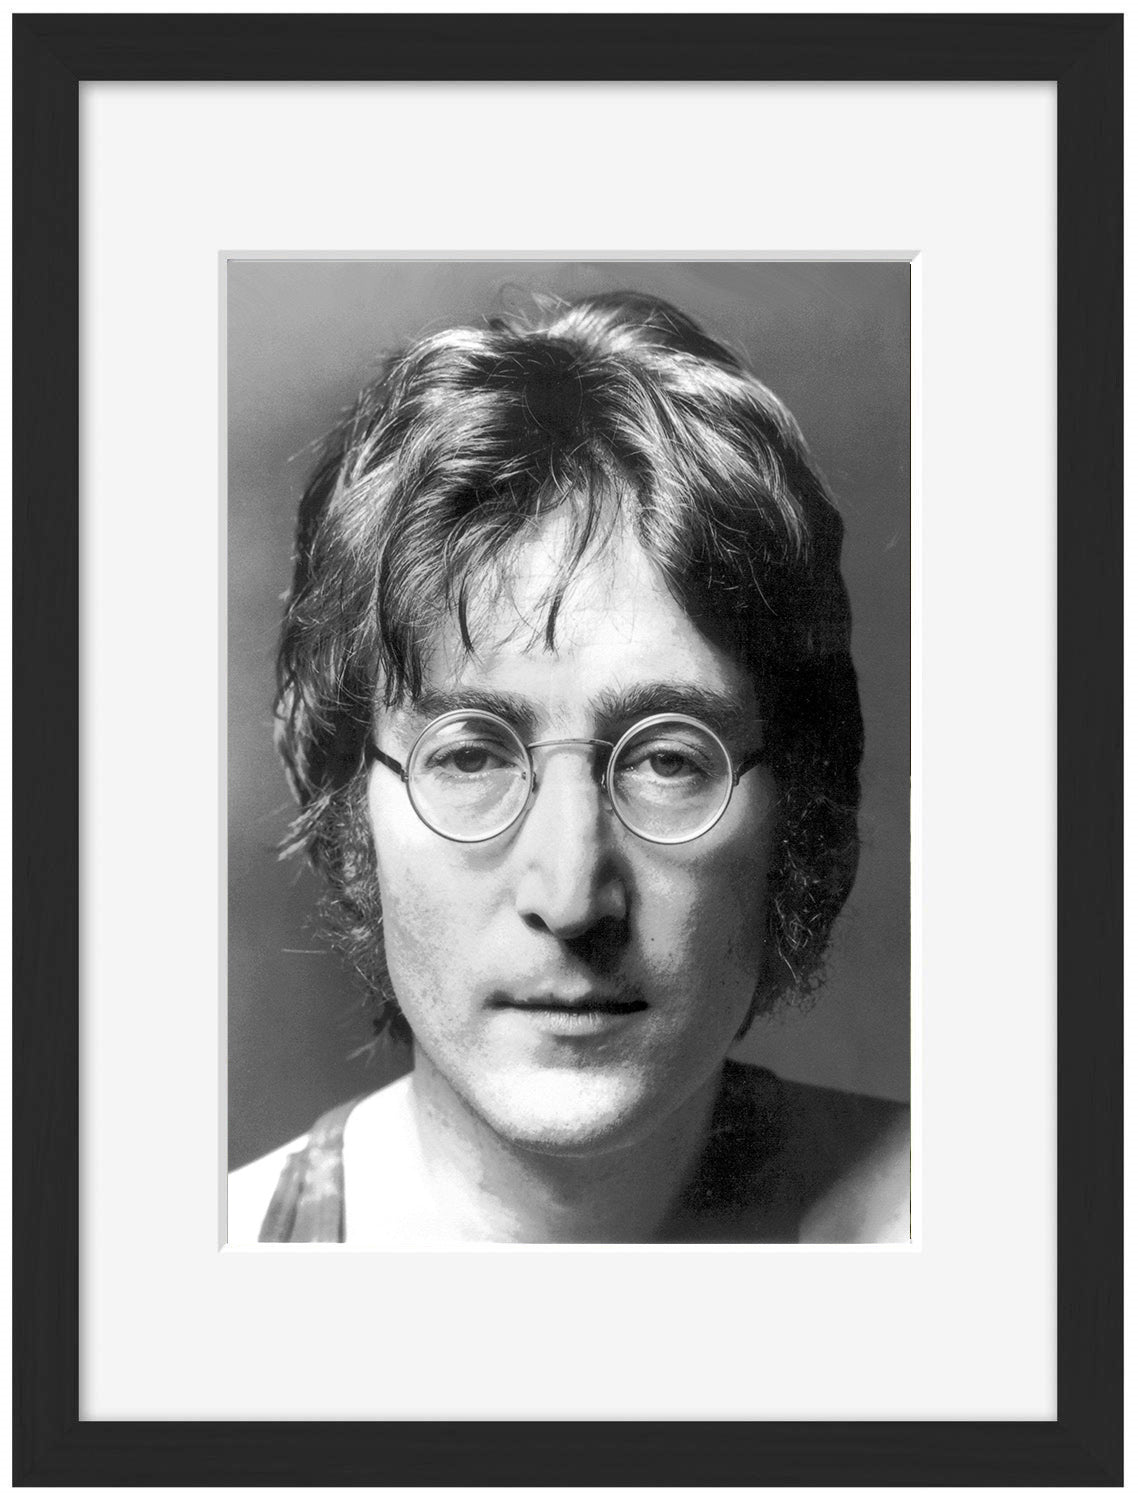 John Lennon-bw-portrait, print-Framed Print-30 x 40 cm-BLUE SHAKER